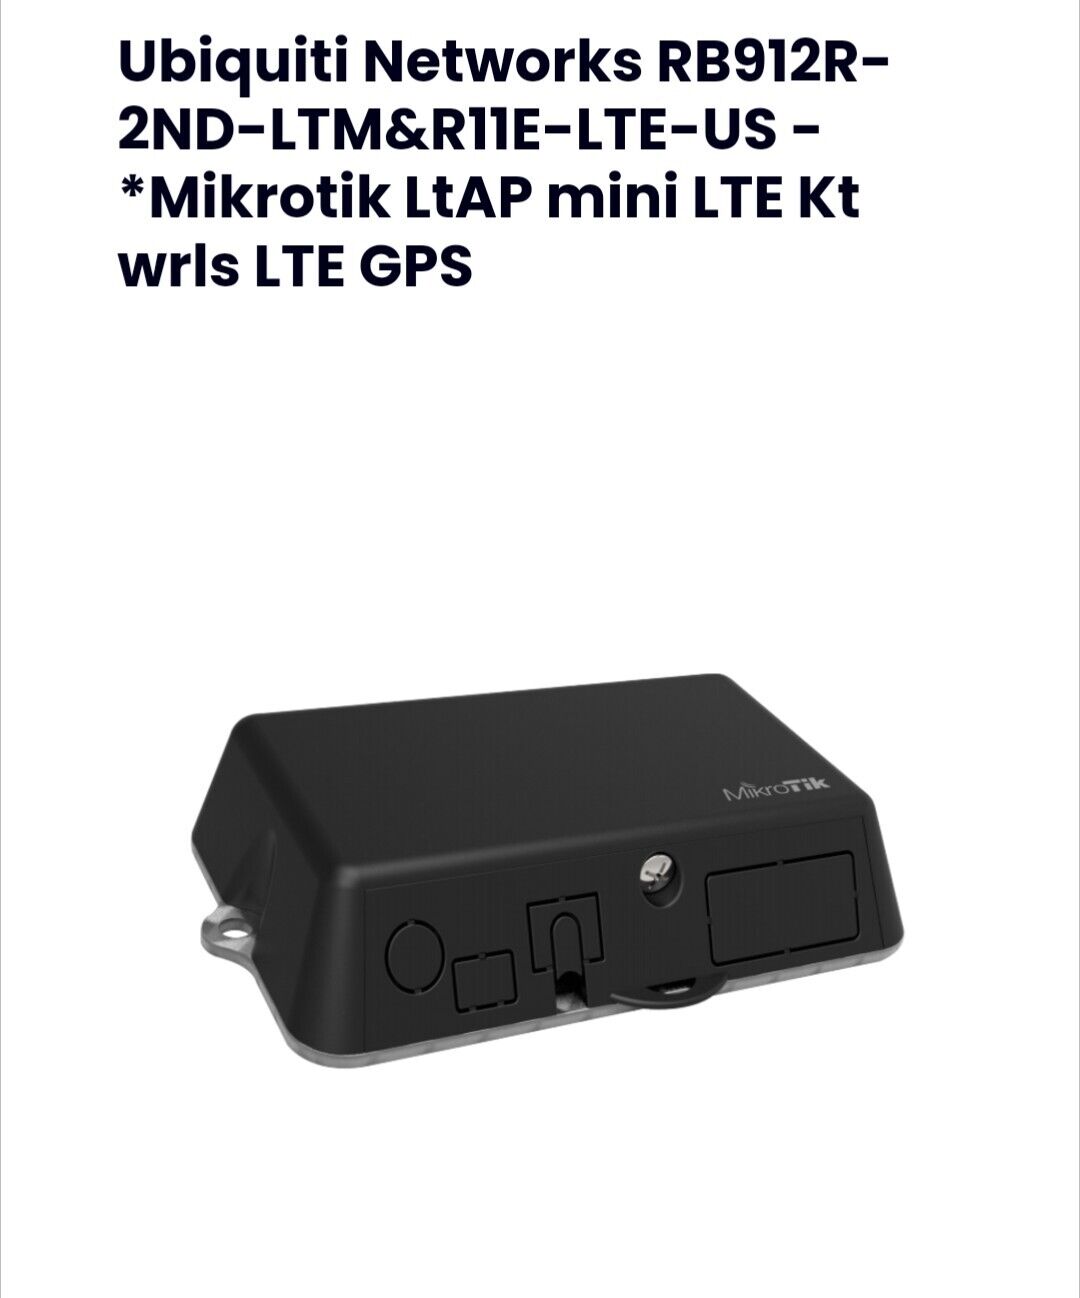 Mikrotik Ltap mini LTE kit